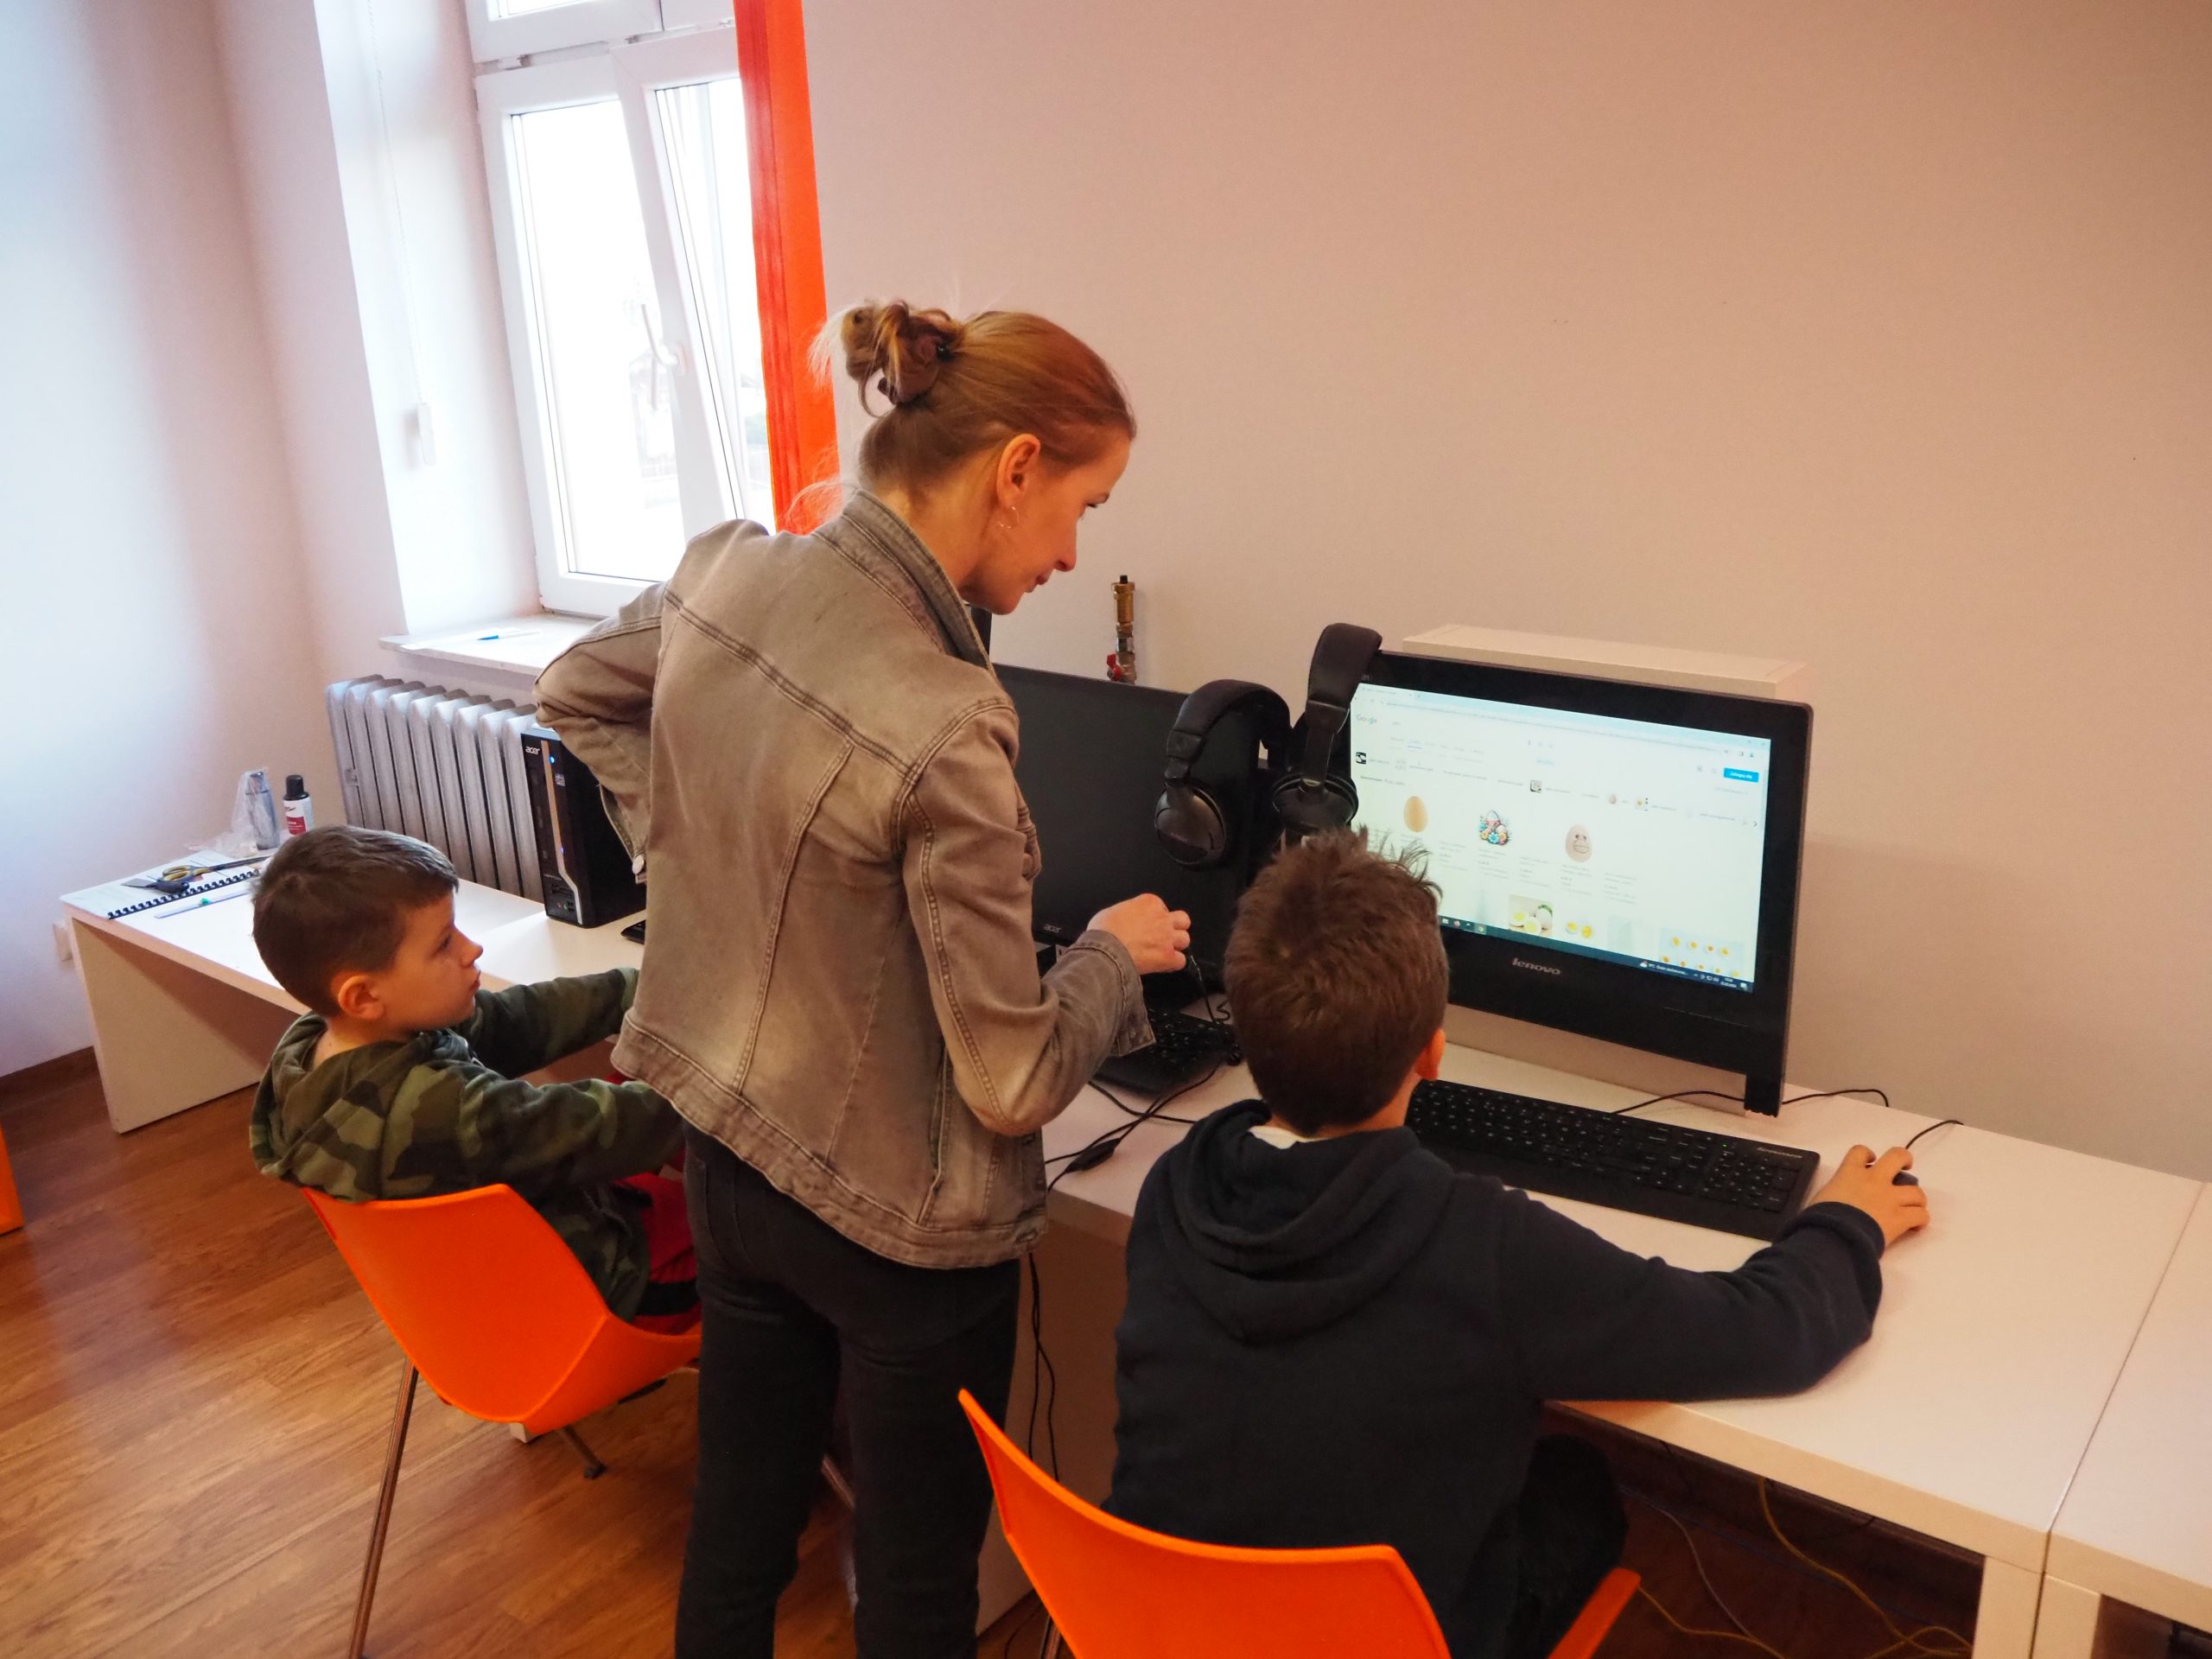 Uczestnicy warsztatów i prowadząca projektują przy komputerach.